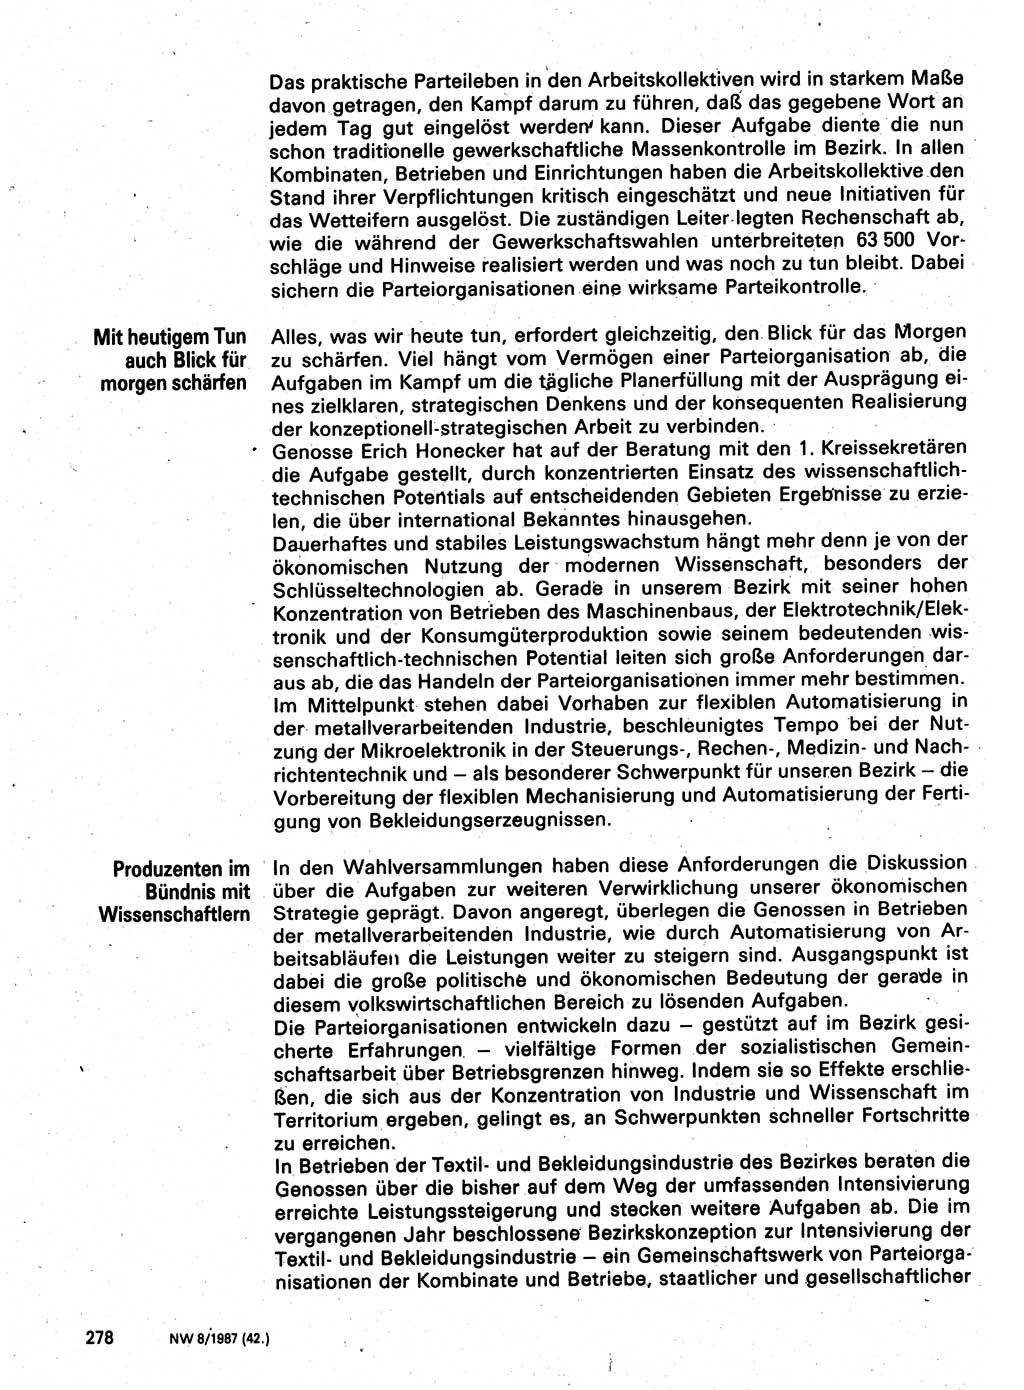 Neuer Weg (NW), Organ des Zentralkomitees (ZK) der SED (Sozialistische Einheitspartei Deutschlands) für Fragen des Parteilebens, 42. Jahrgang [Deutsche Demokratische Republik (DDR)] 1987, Seite 278 (NW ZK SED DDR 1987, S. 278)